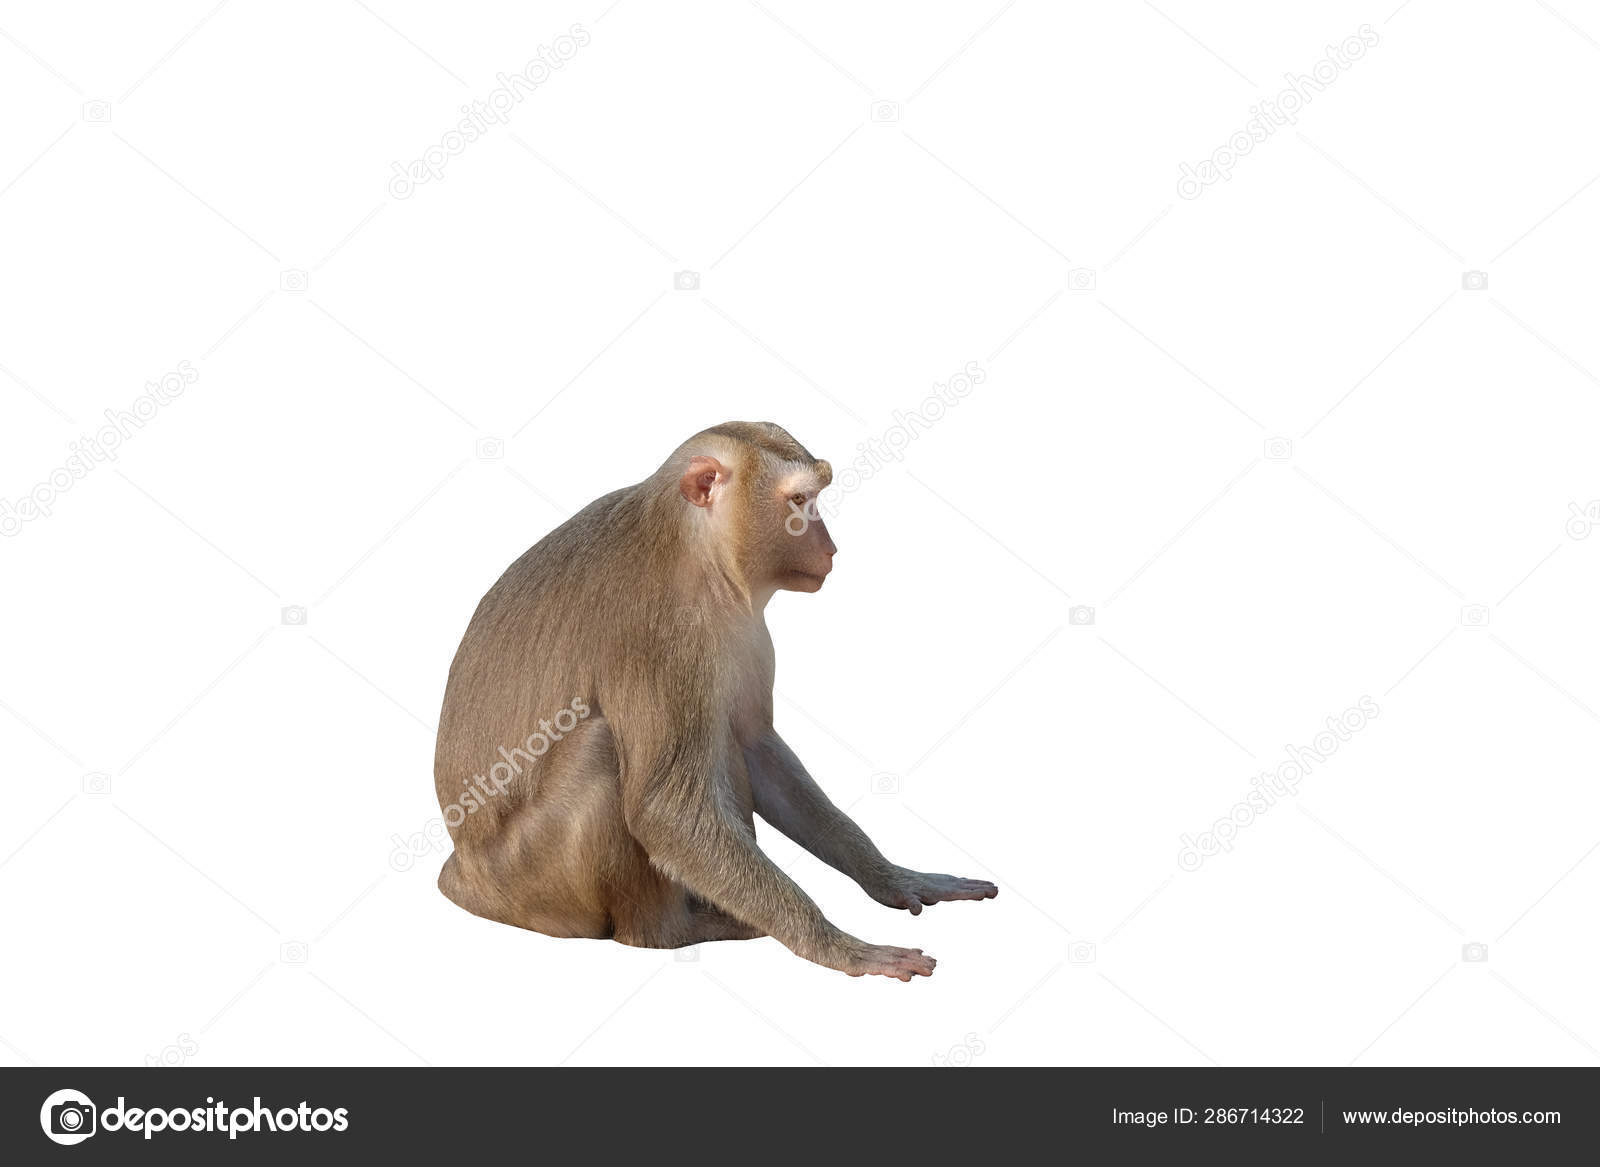 Bạn đã bao giờ nhìn thấy một con khỉ mềm mại đến vậy chưa? Ảnh liền kề sẽ khiến bạn phải lắc đầu kinh ngạc và muốn ôm chúng ngay lập tức.